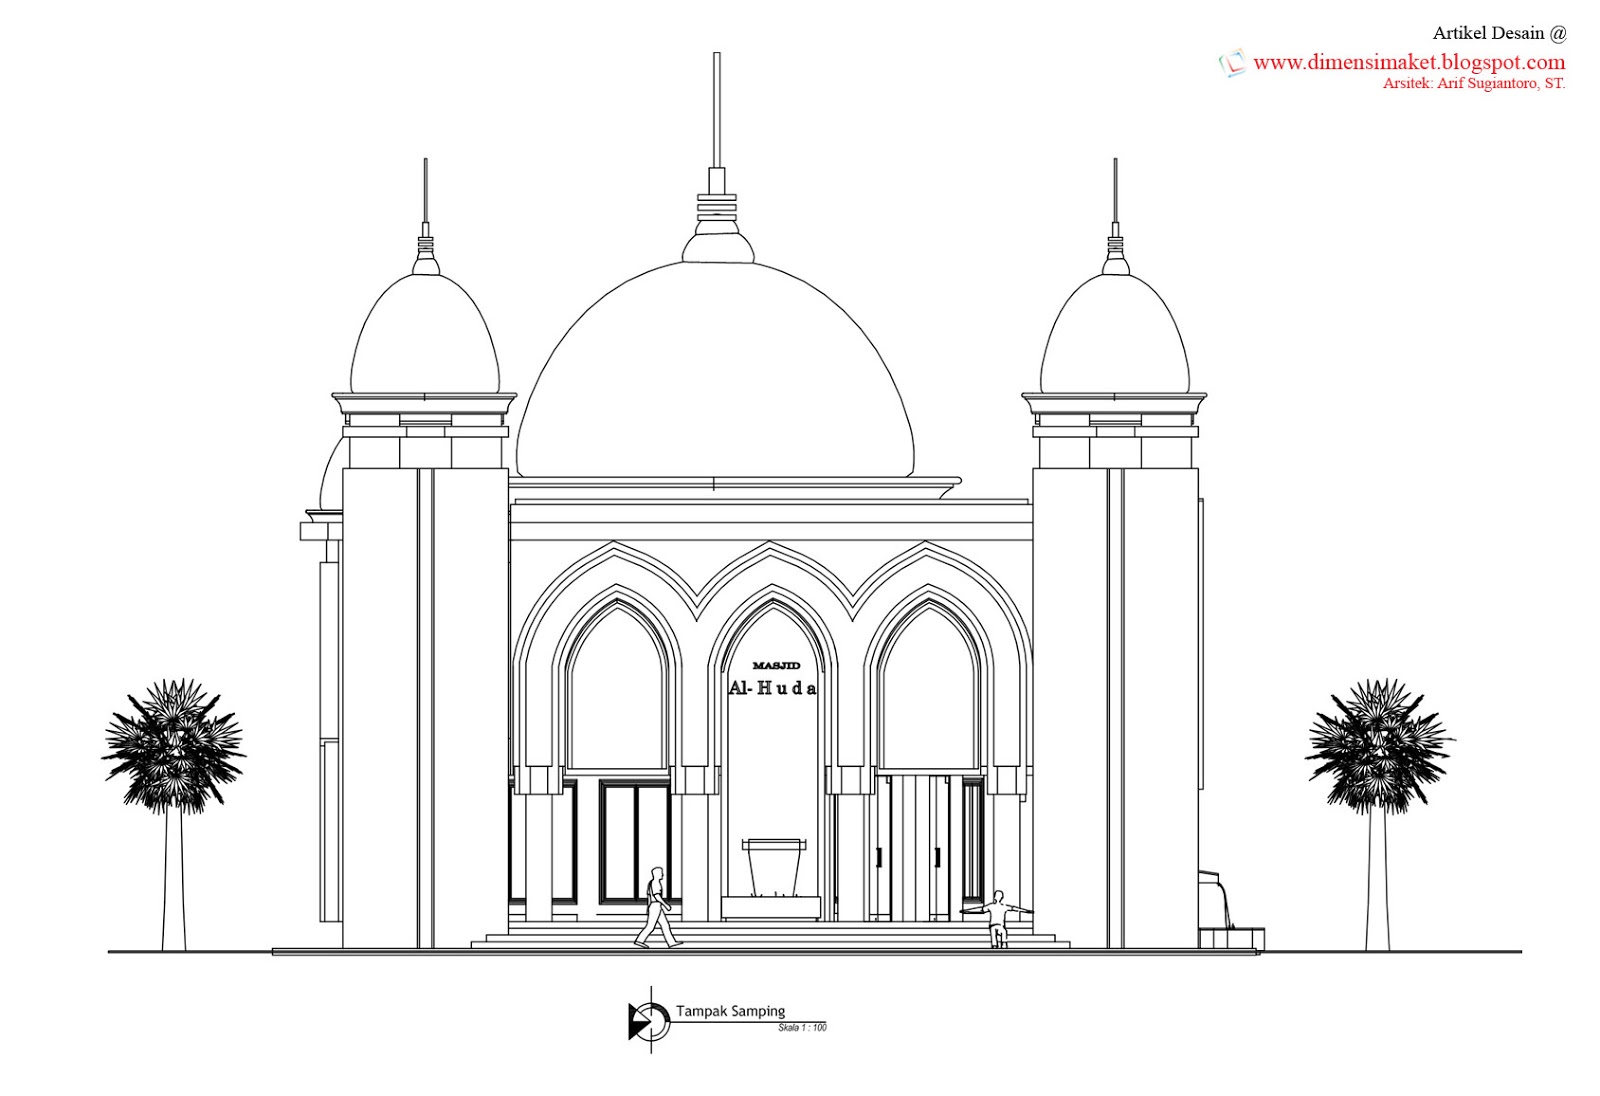 Desain Masjid & Musholla 010 : Perencanaan Masjid Al-Huda, Dadaprejo 